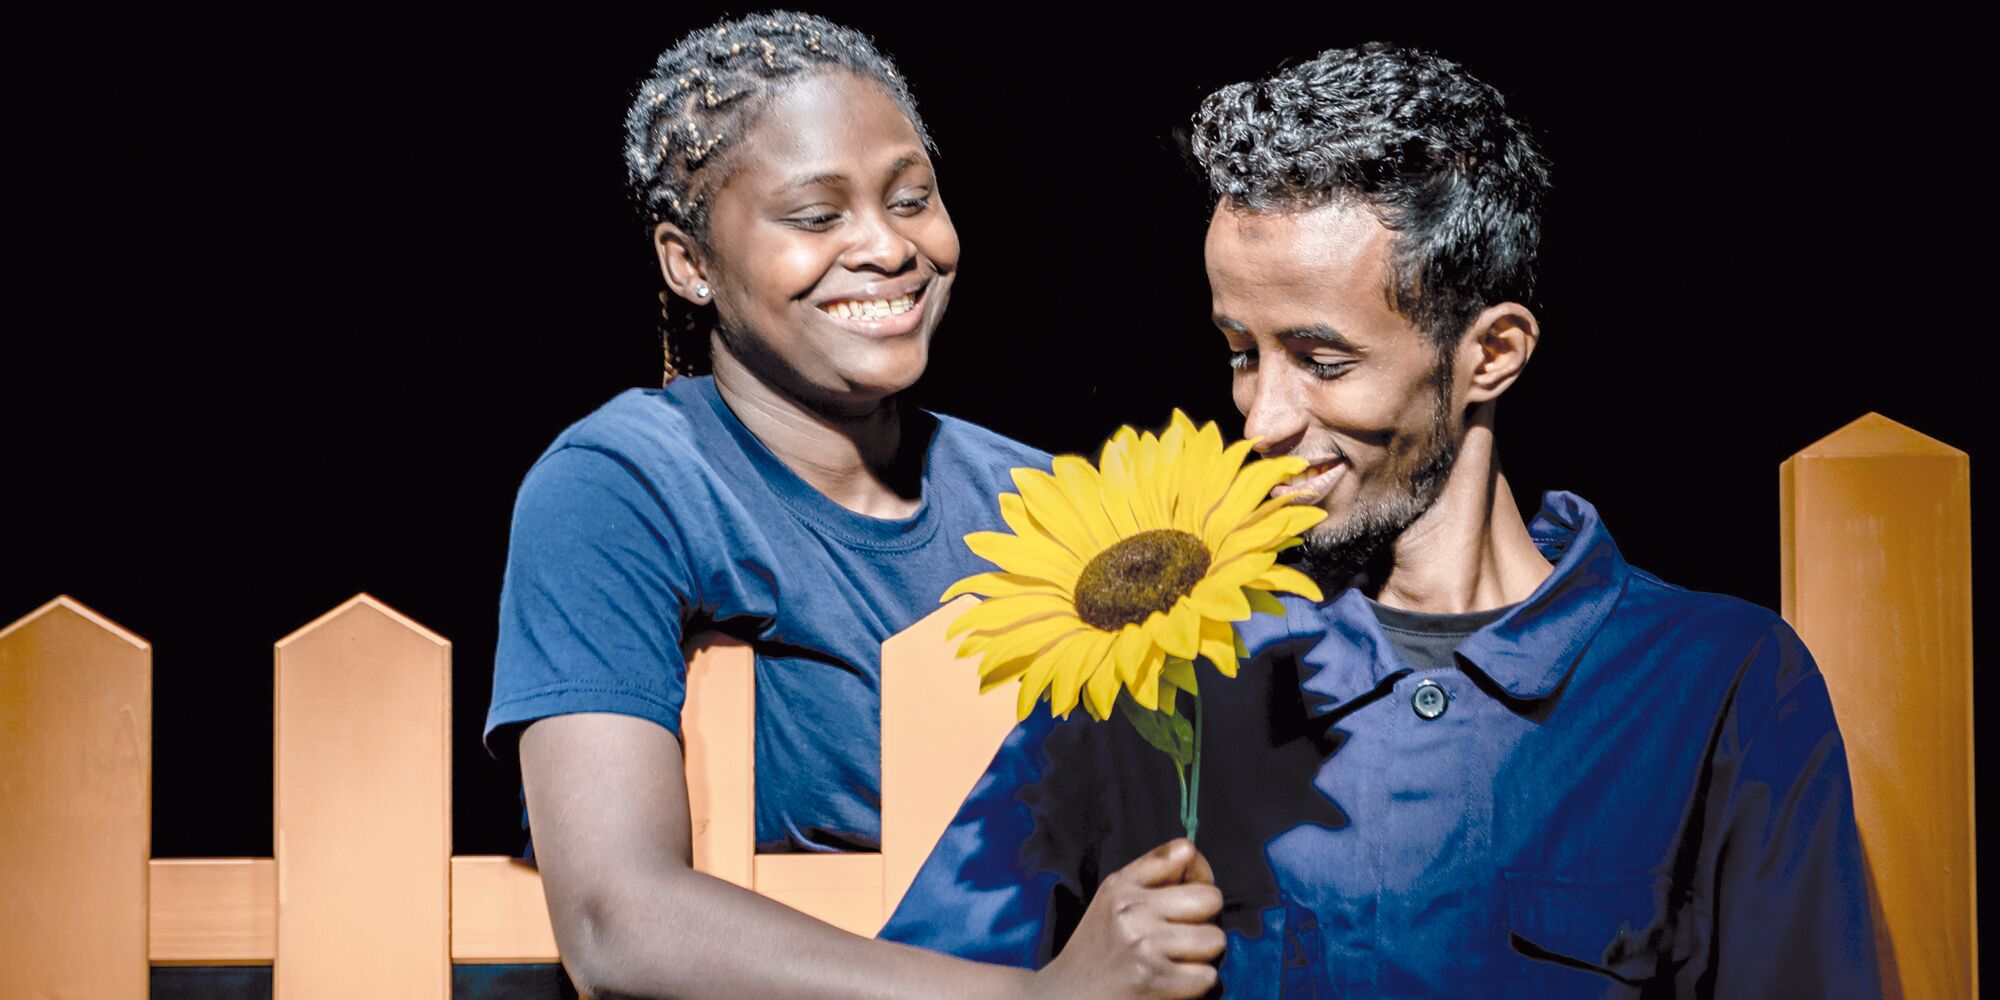 Hier sieht man links eine junge Frau, die einem jungen Mann rechts lächelnd eine Sonnenblume über einen Zaun reicht. Der junge Mann sieht die Blume an. Beide tragen dunkelblau und sind schwarz.